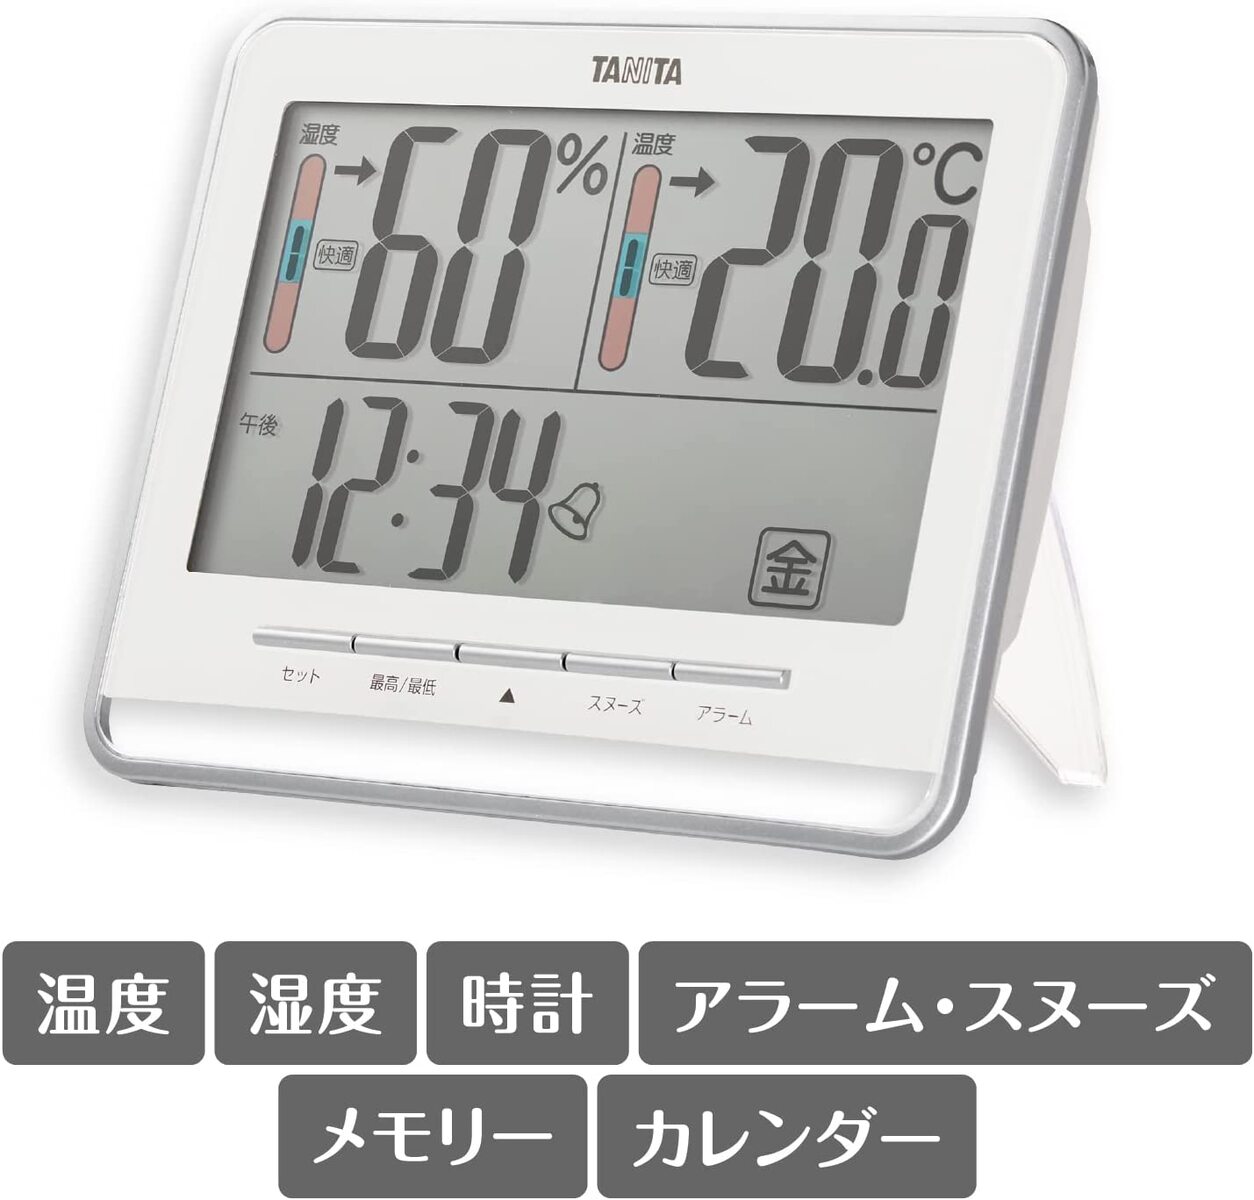 送料無料 タニタ デジタル時計 デジタル 大画面 ホワイト 温度 湿度 快適レベル 表示 カレンダー アラーム スヌーズ 機能 置き掛け時計 両用 TT-538 WH